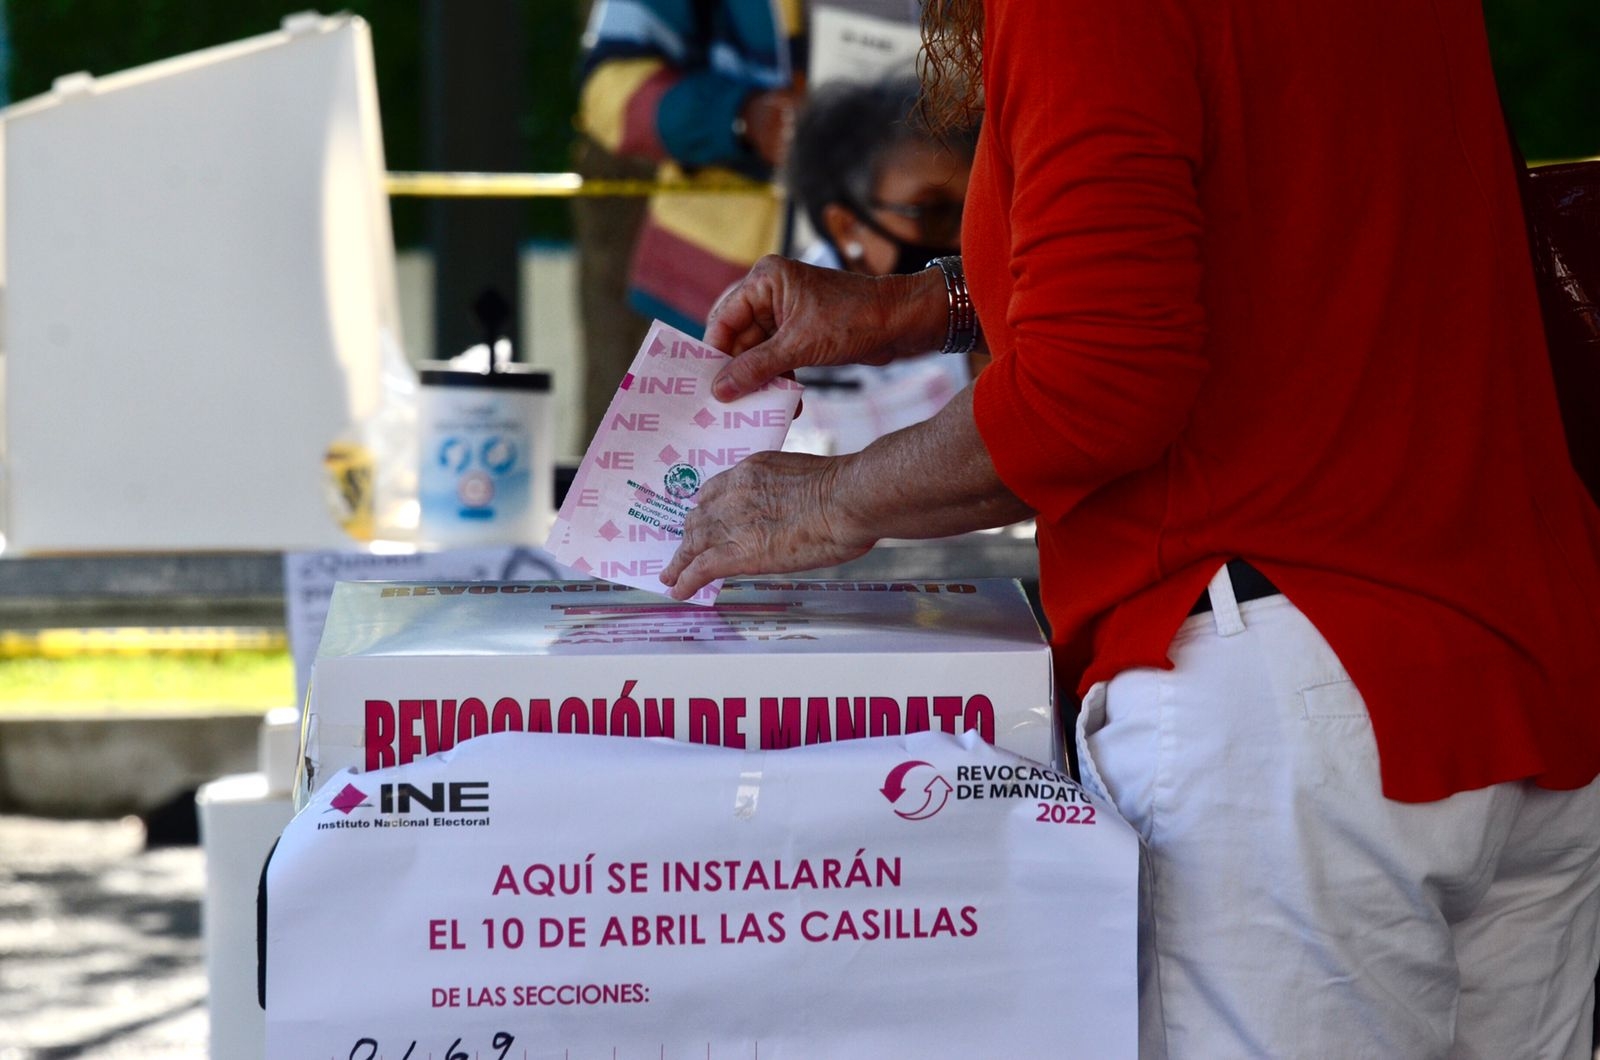 Revocación de Mandato: INE Quintana Roo instala el 92.5% de las casillas